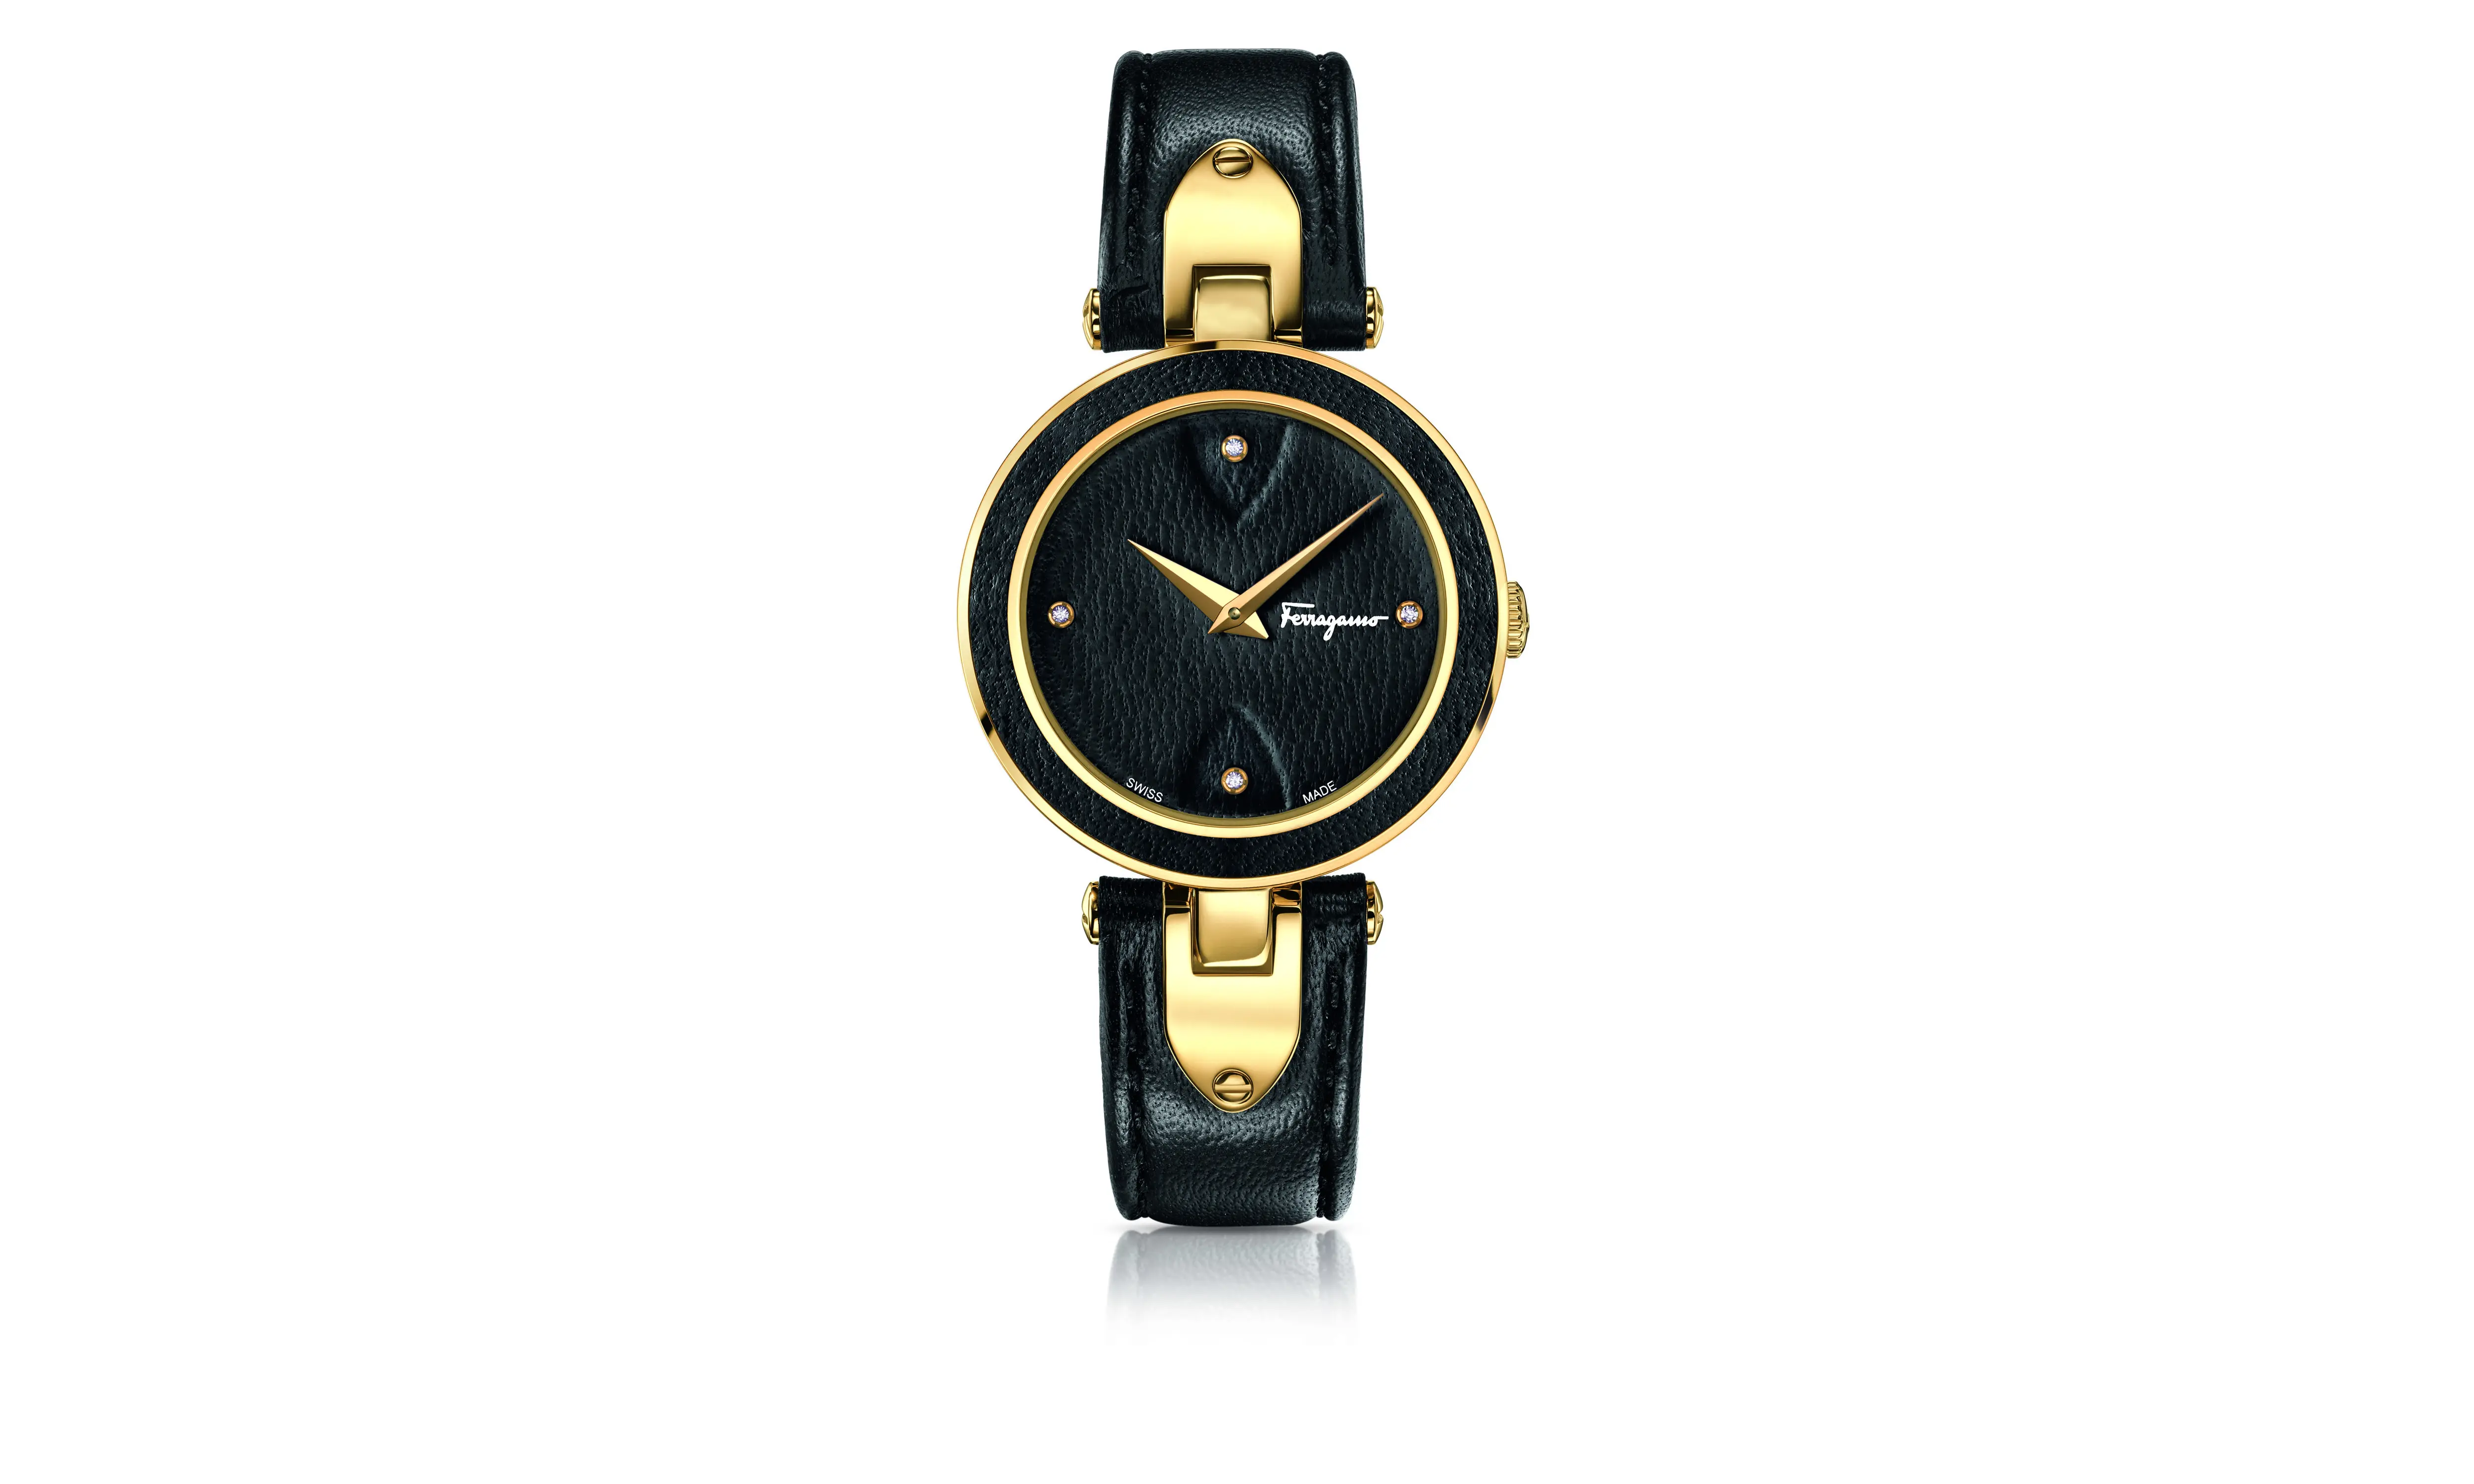 Salvatore Ferragamo baru saja melansir jam tangan terbarunya dengan desain elegan untuk menunjang tampilan Anda. 